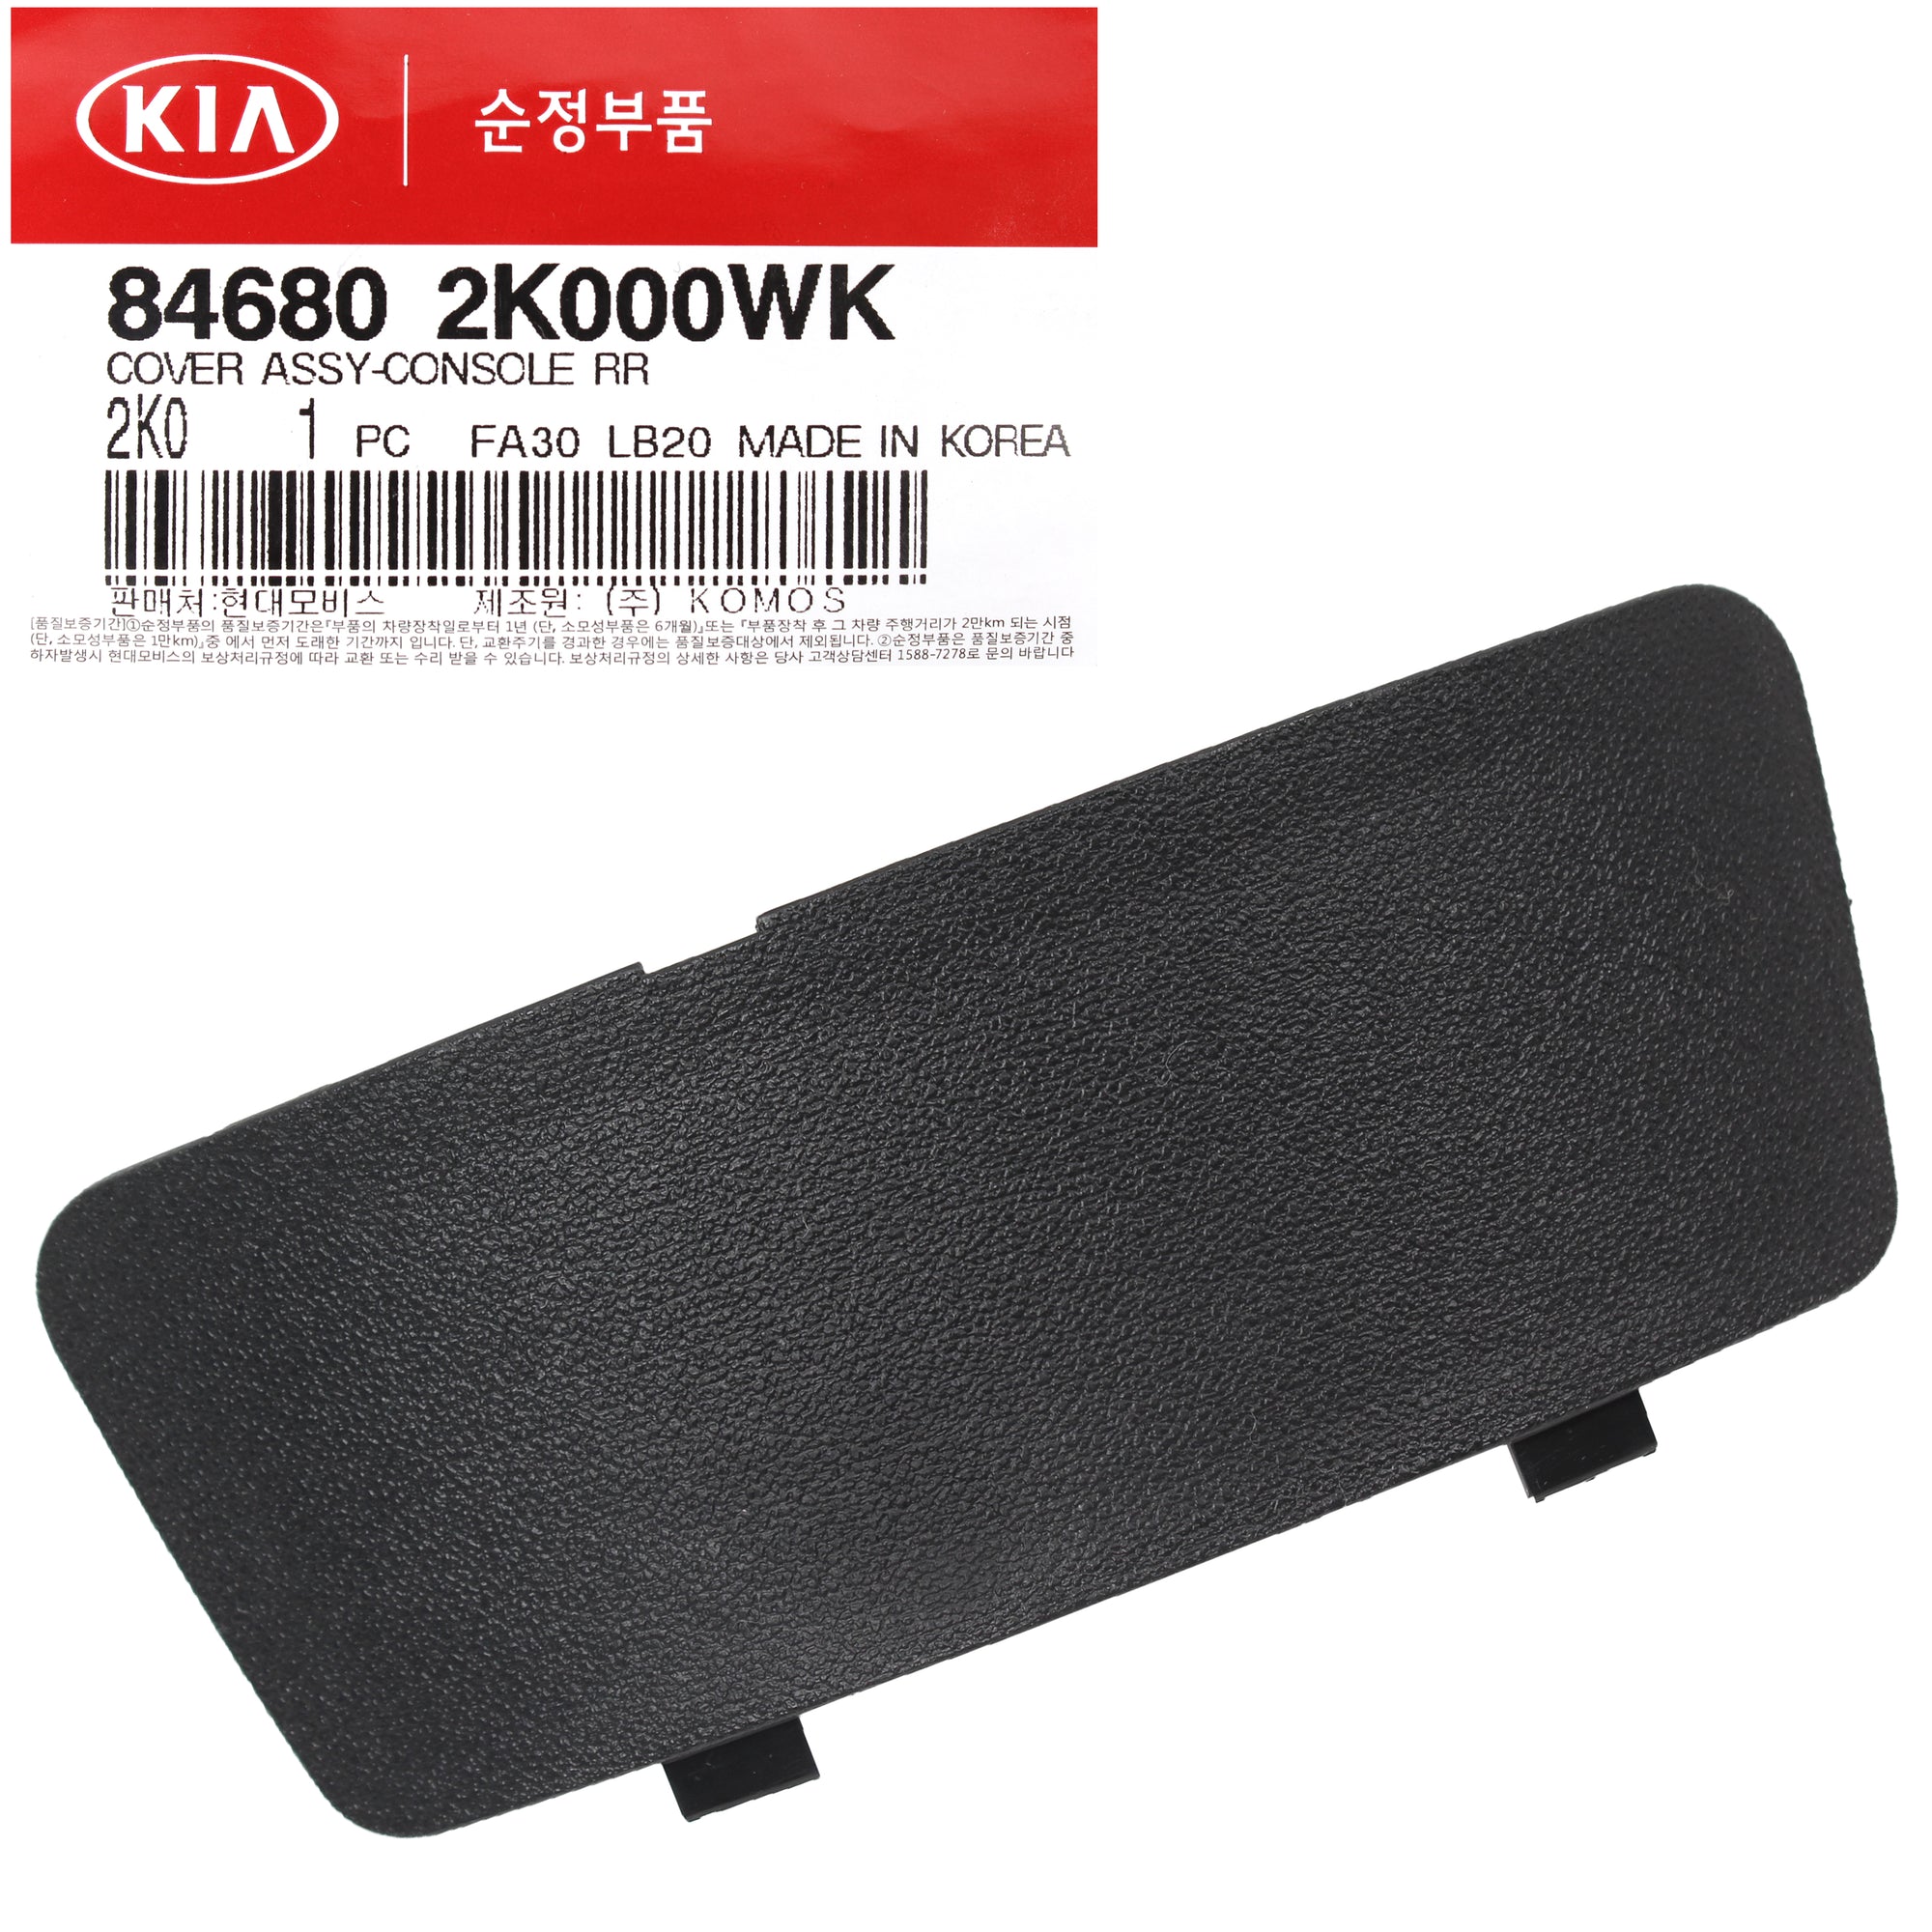 GENUINE Rear Console Cover Black for 2010-2013 Kia Soul 846802K000WK